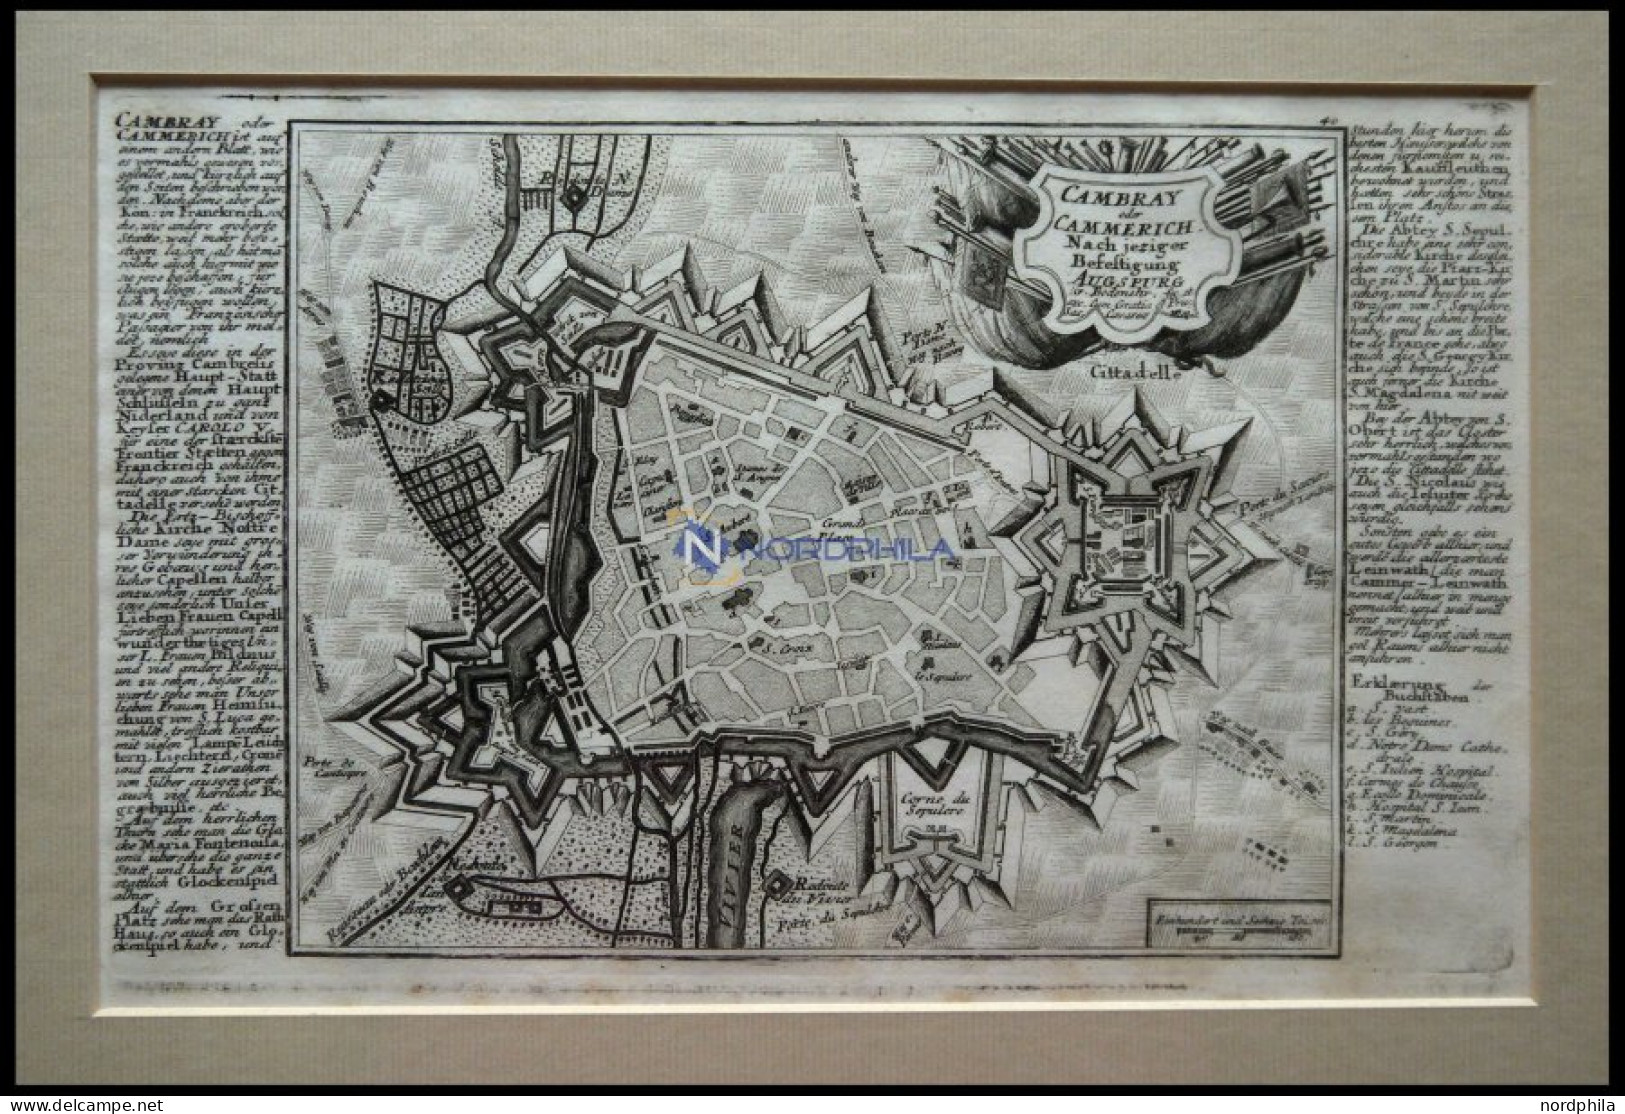 CAMBRAY, Gesamtansicht Aus Der Vogelschau, Kupferstich-Plan Von Bodenehr Um 1720 - Litografía